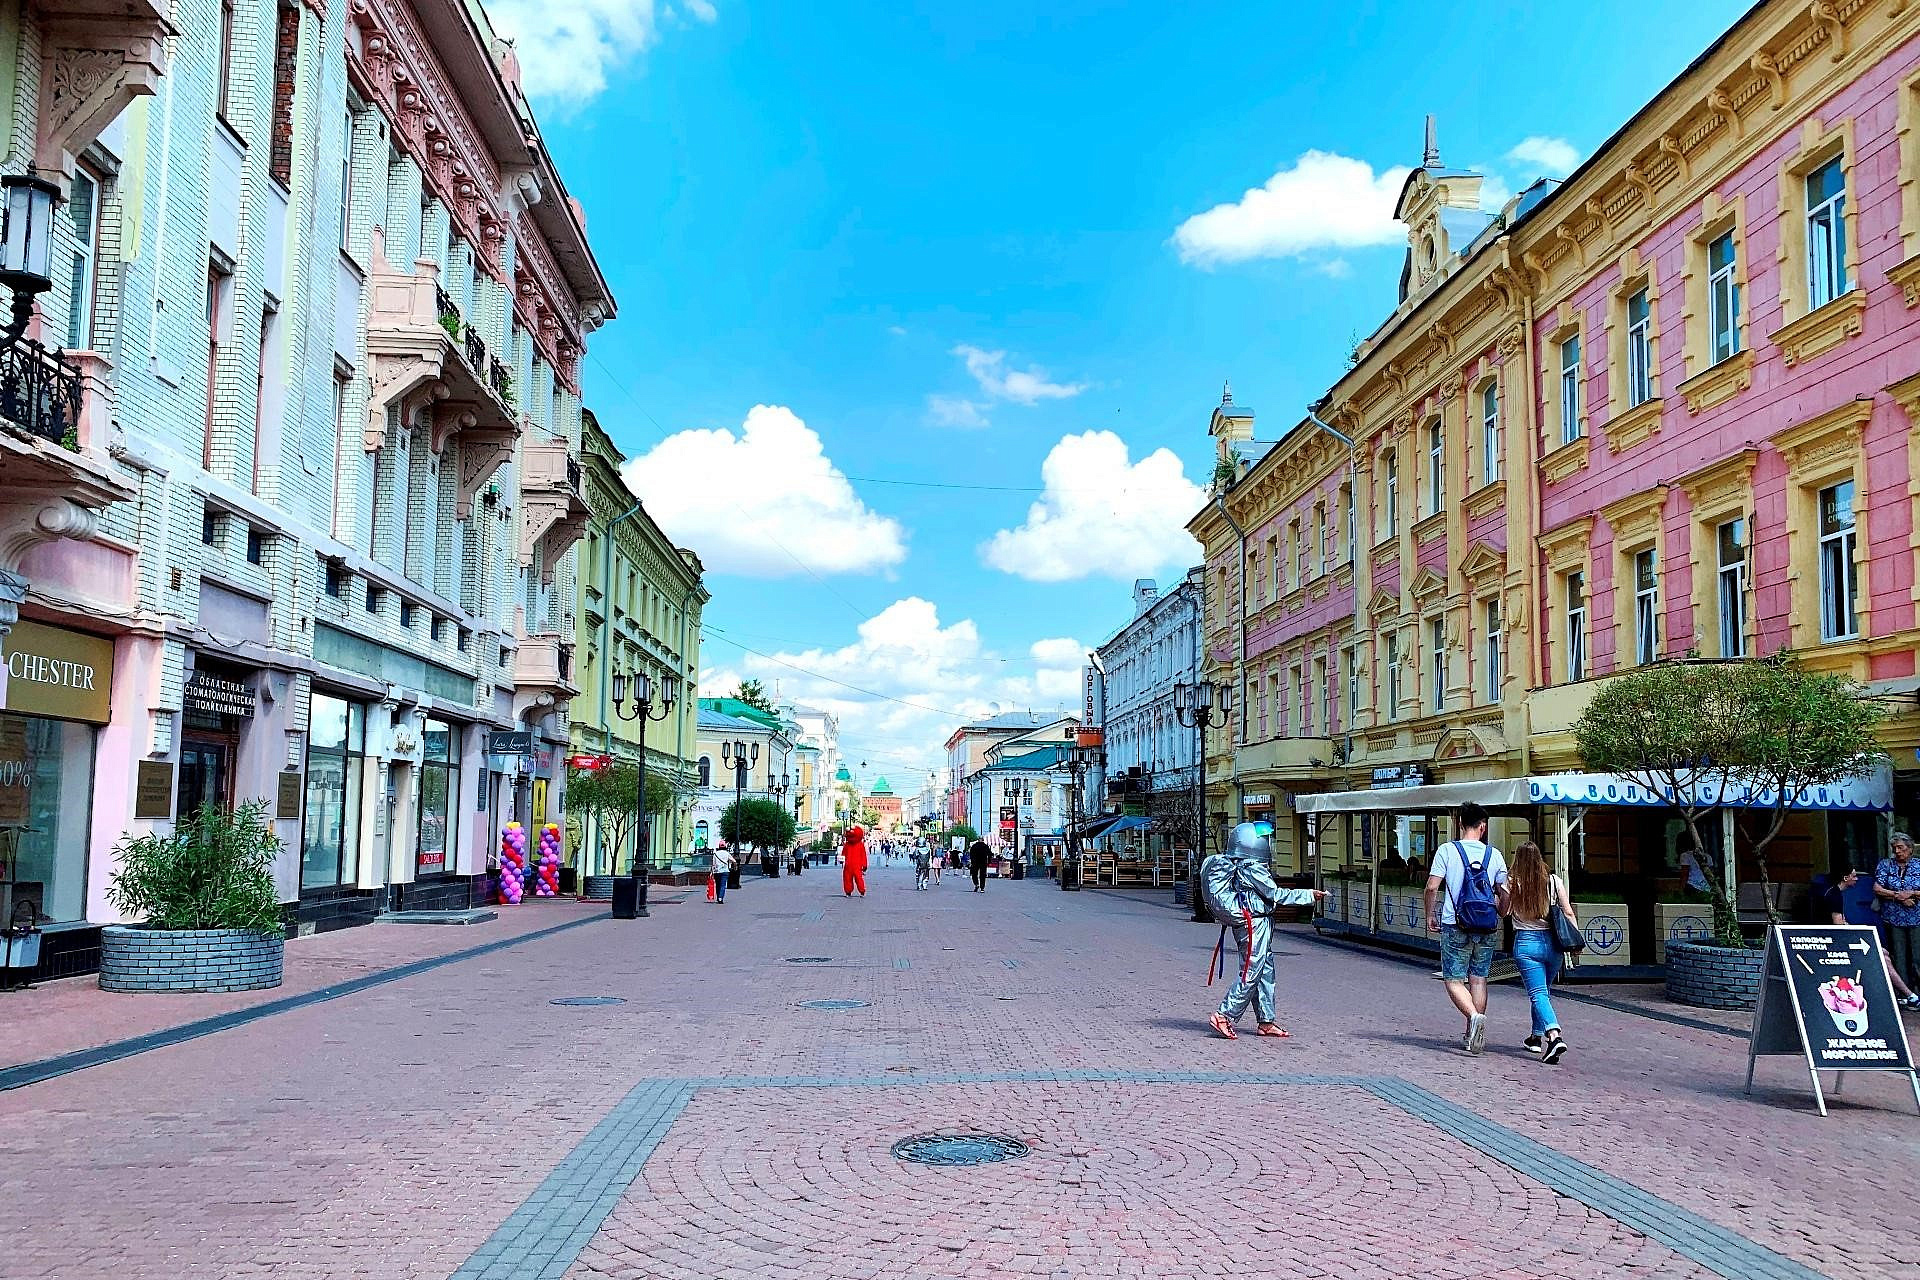 В Нижнем Новгороде запланирован ремонт улицы Большая Покровская